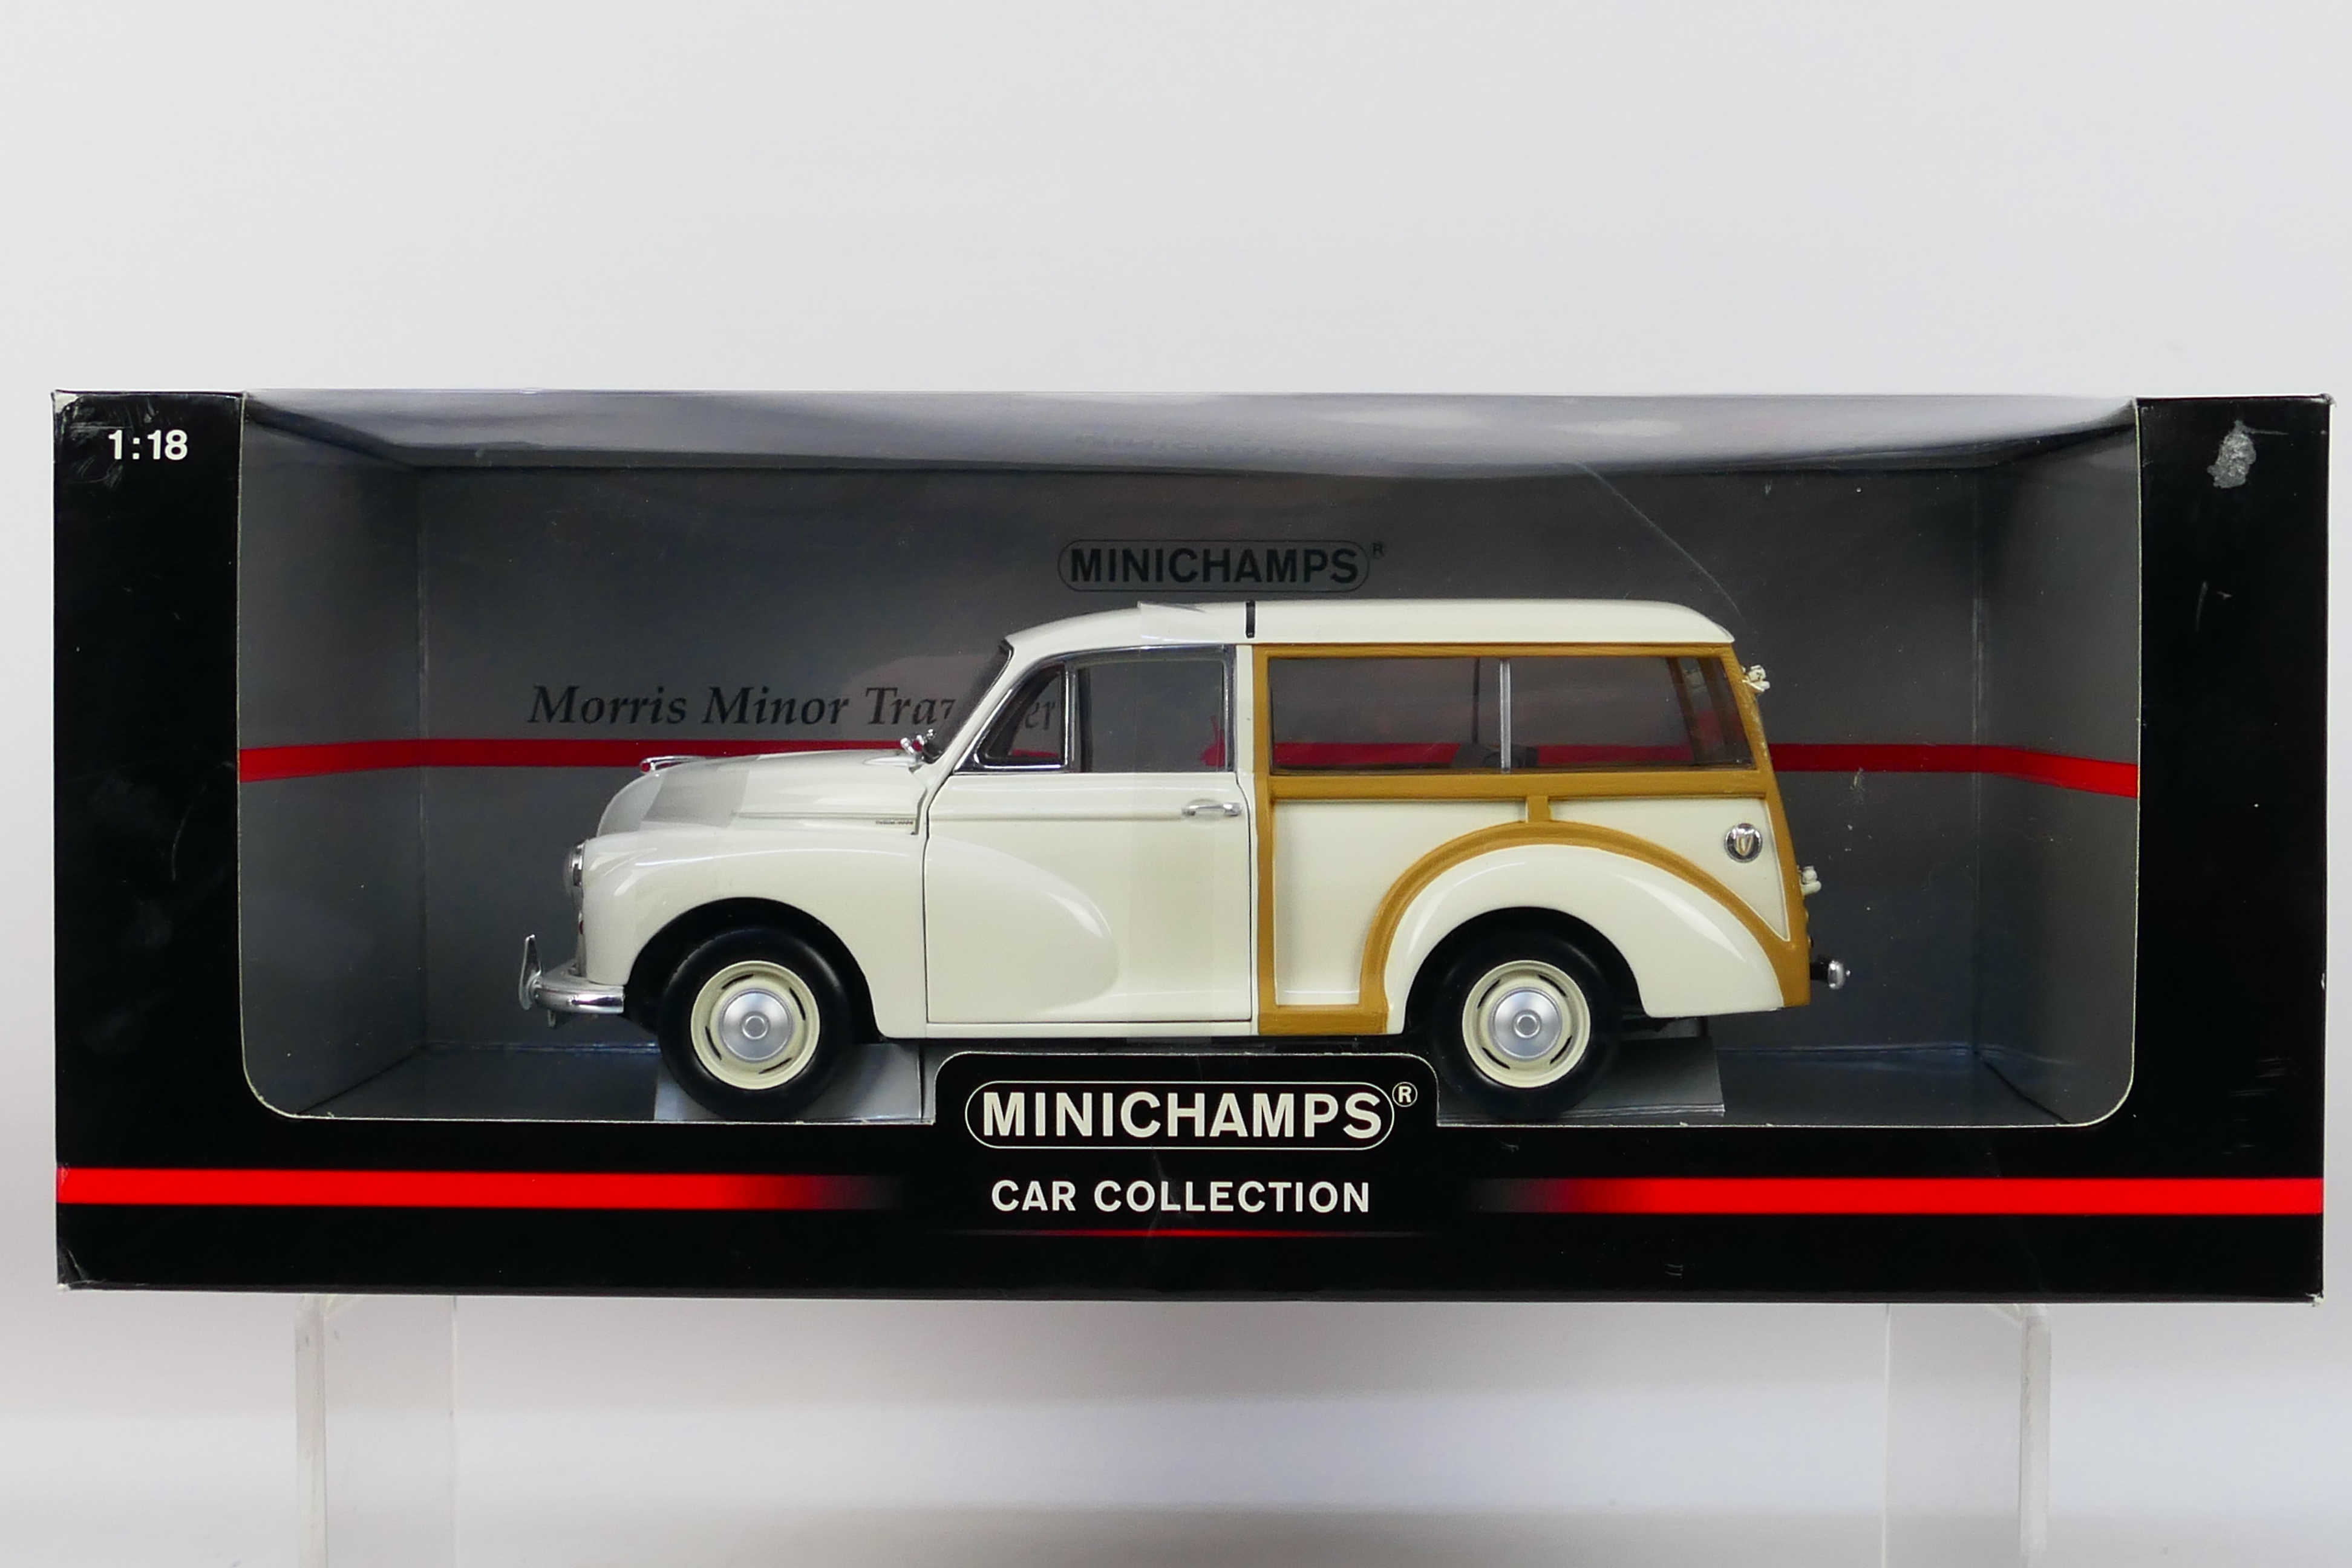 Minichamps - A boxed Minichamps 'Car Collection' #150137010 1:18 scale Morris Minor Traveller.